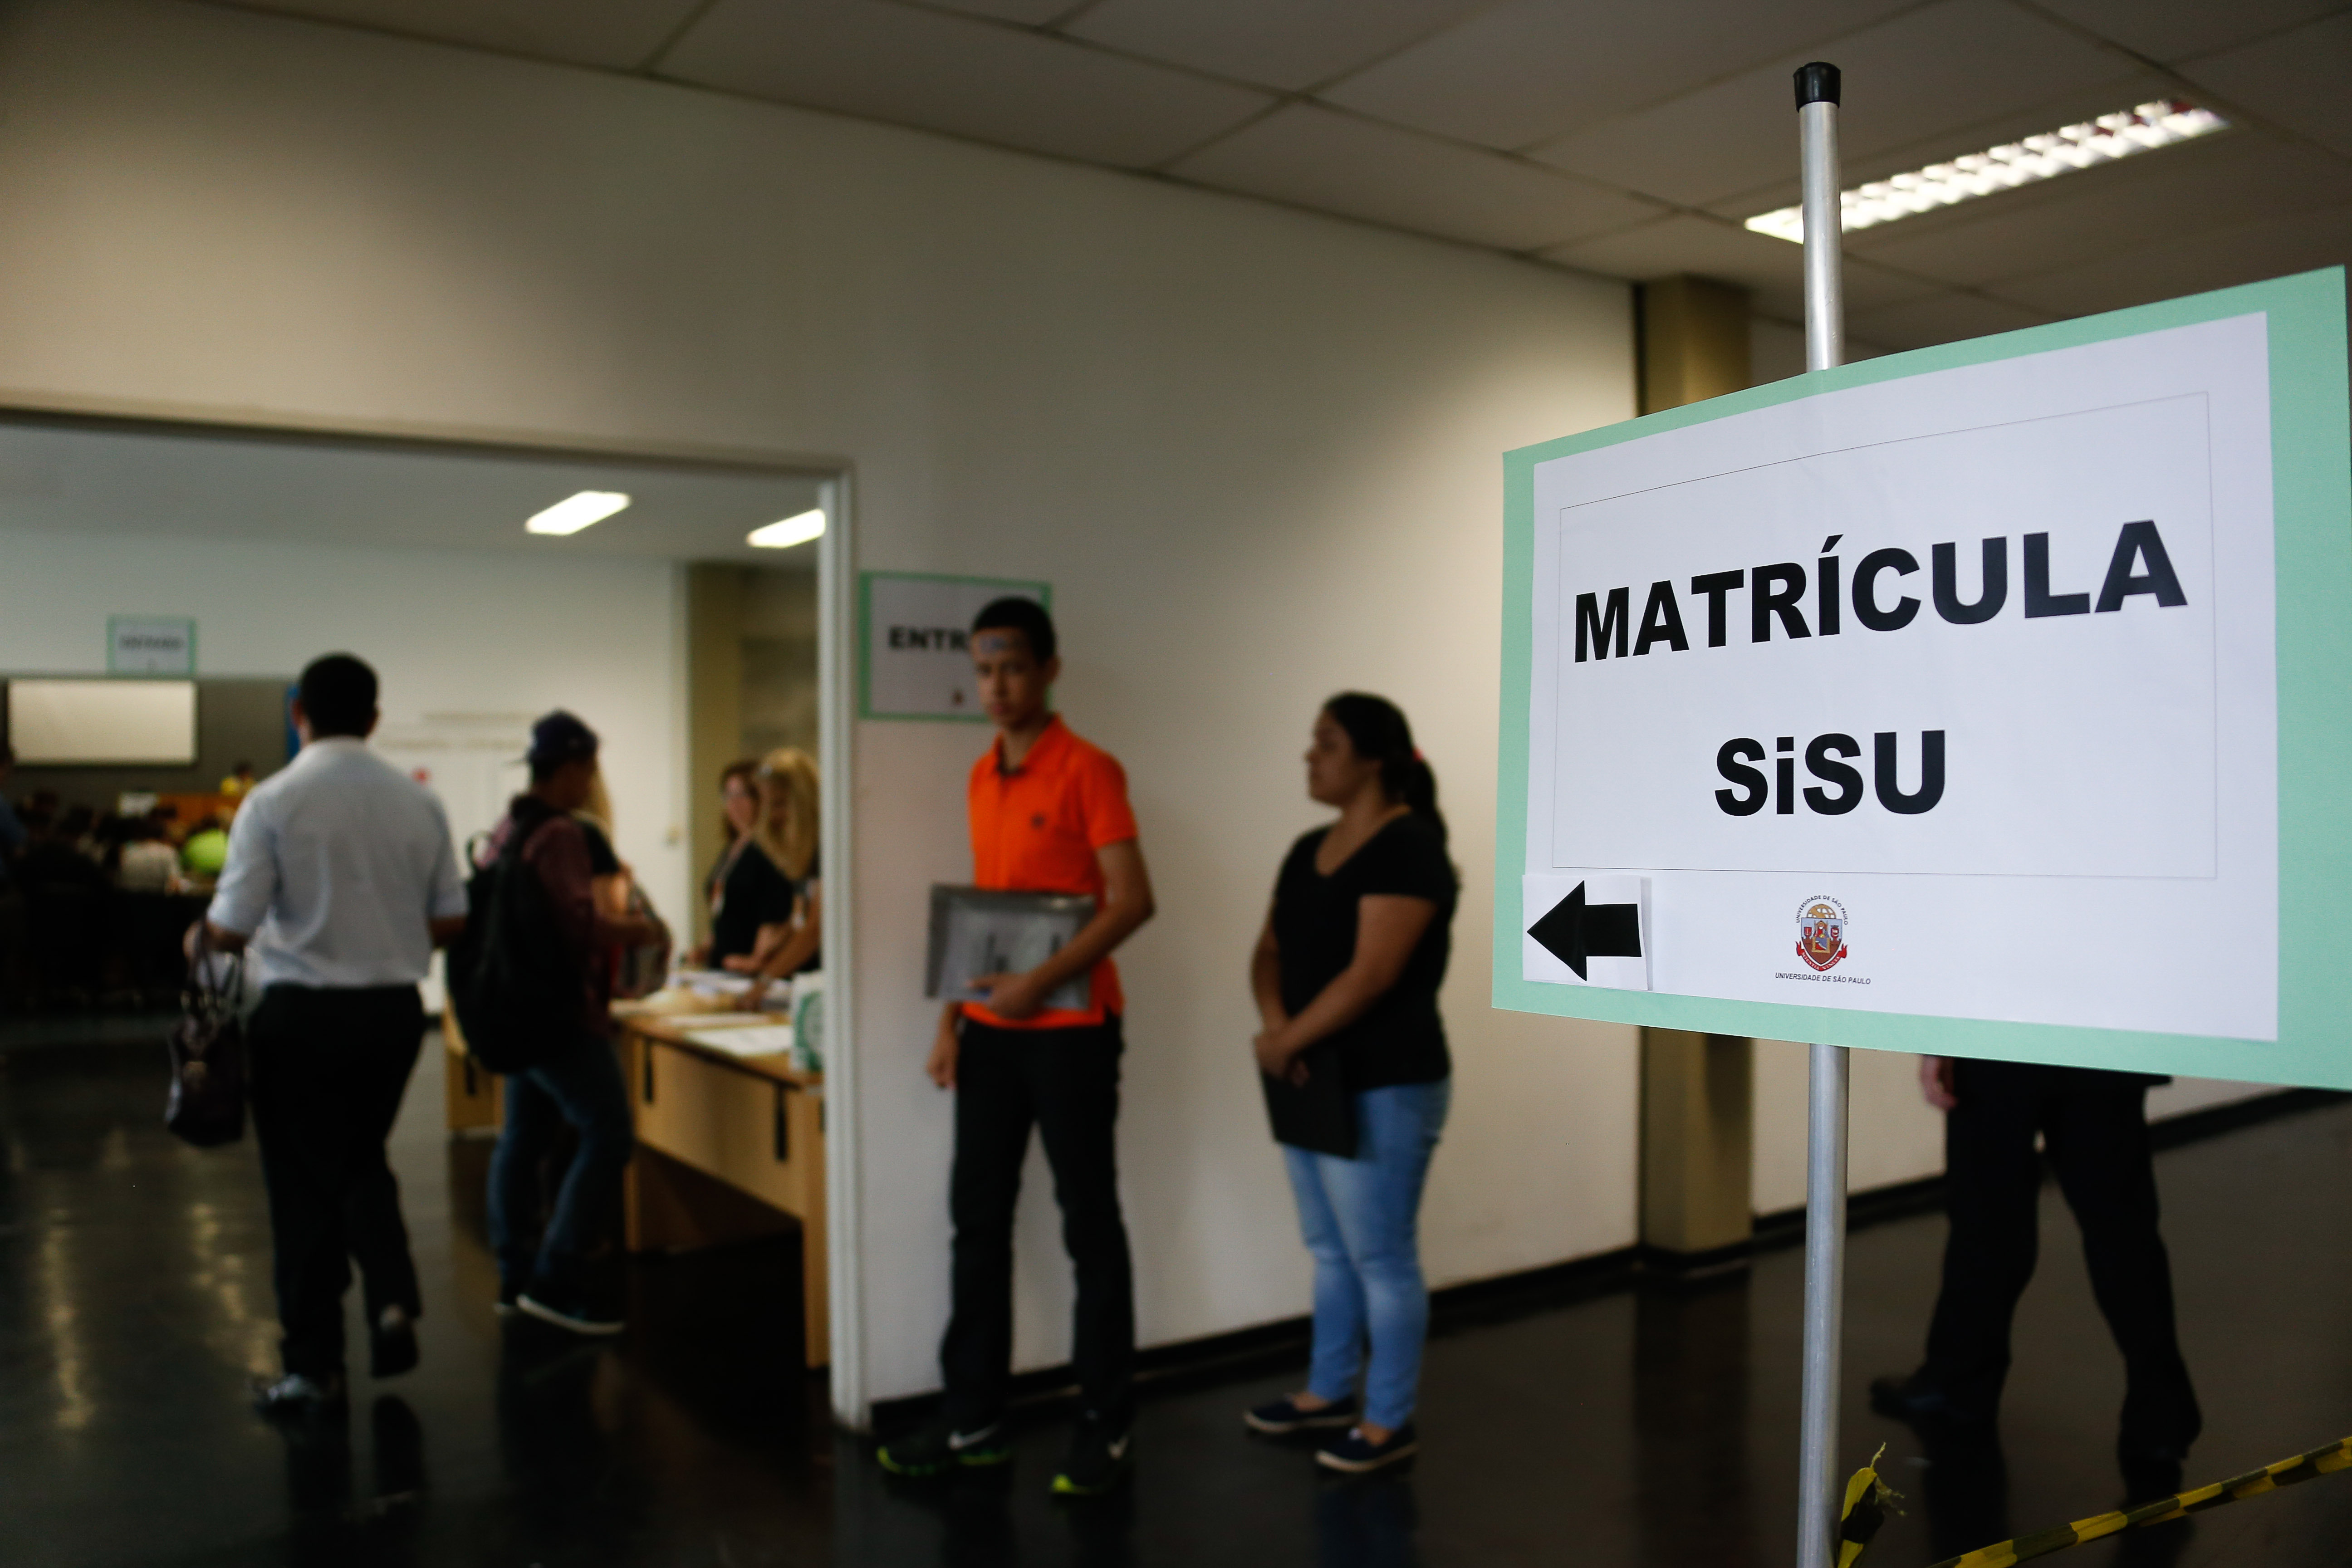 Inscrição de matrículas de todos os cursos USP participantes do SiSU. foto Cecília Bastos - Reg. 017-16